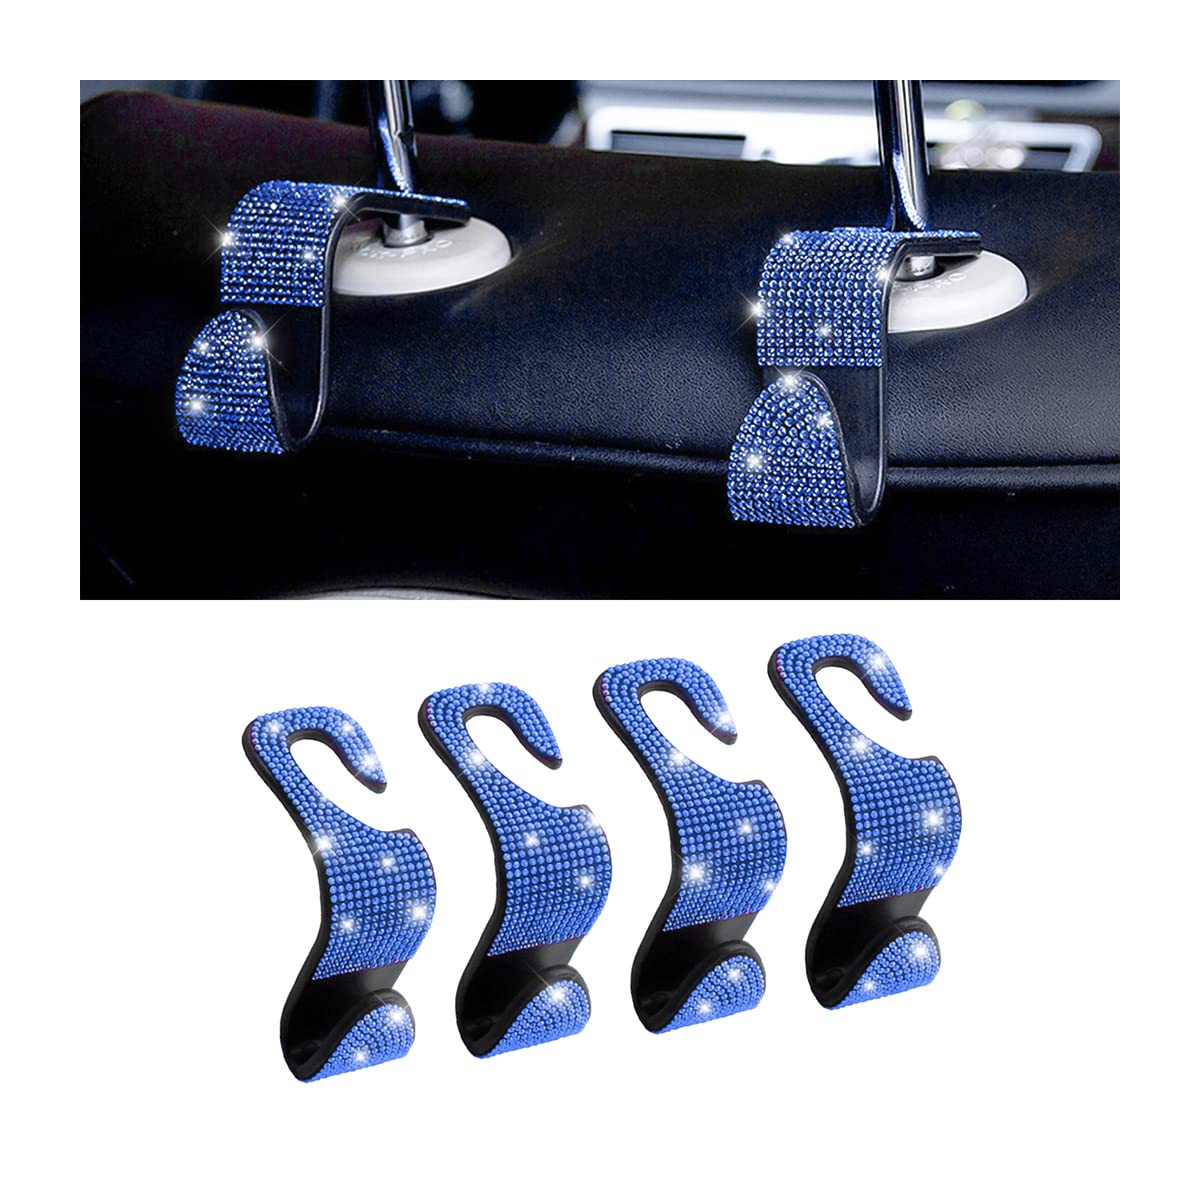 CGEAMDY 4 Stück Bling Auto Kopfstützen Haken, Autohaken Rücksitz Mit Strass Diamond, Universal-Sitz-Organizer-Aufbewahrungshaken Für Suspension Lebensmittels(Blau) von CGEAMDY